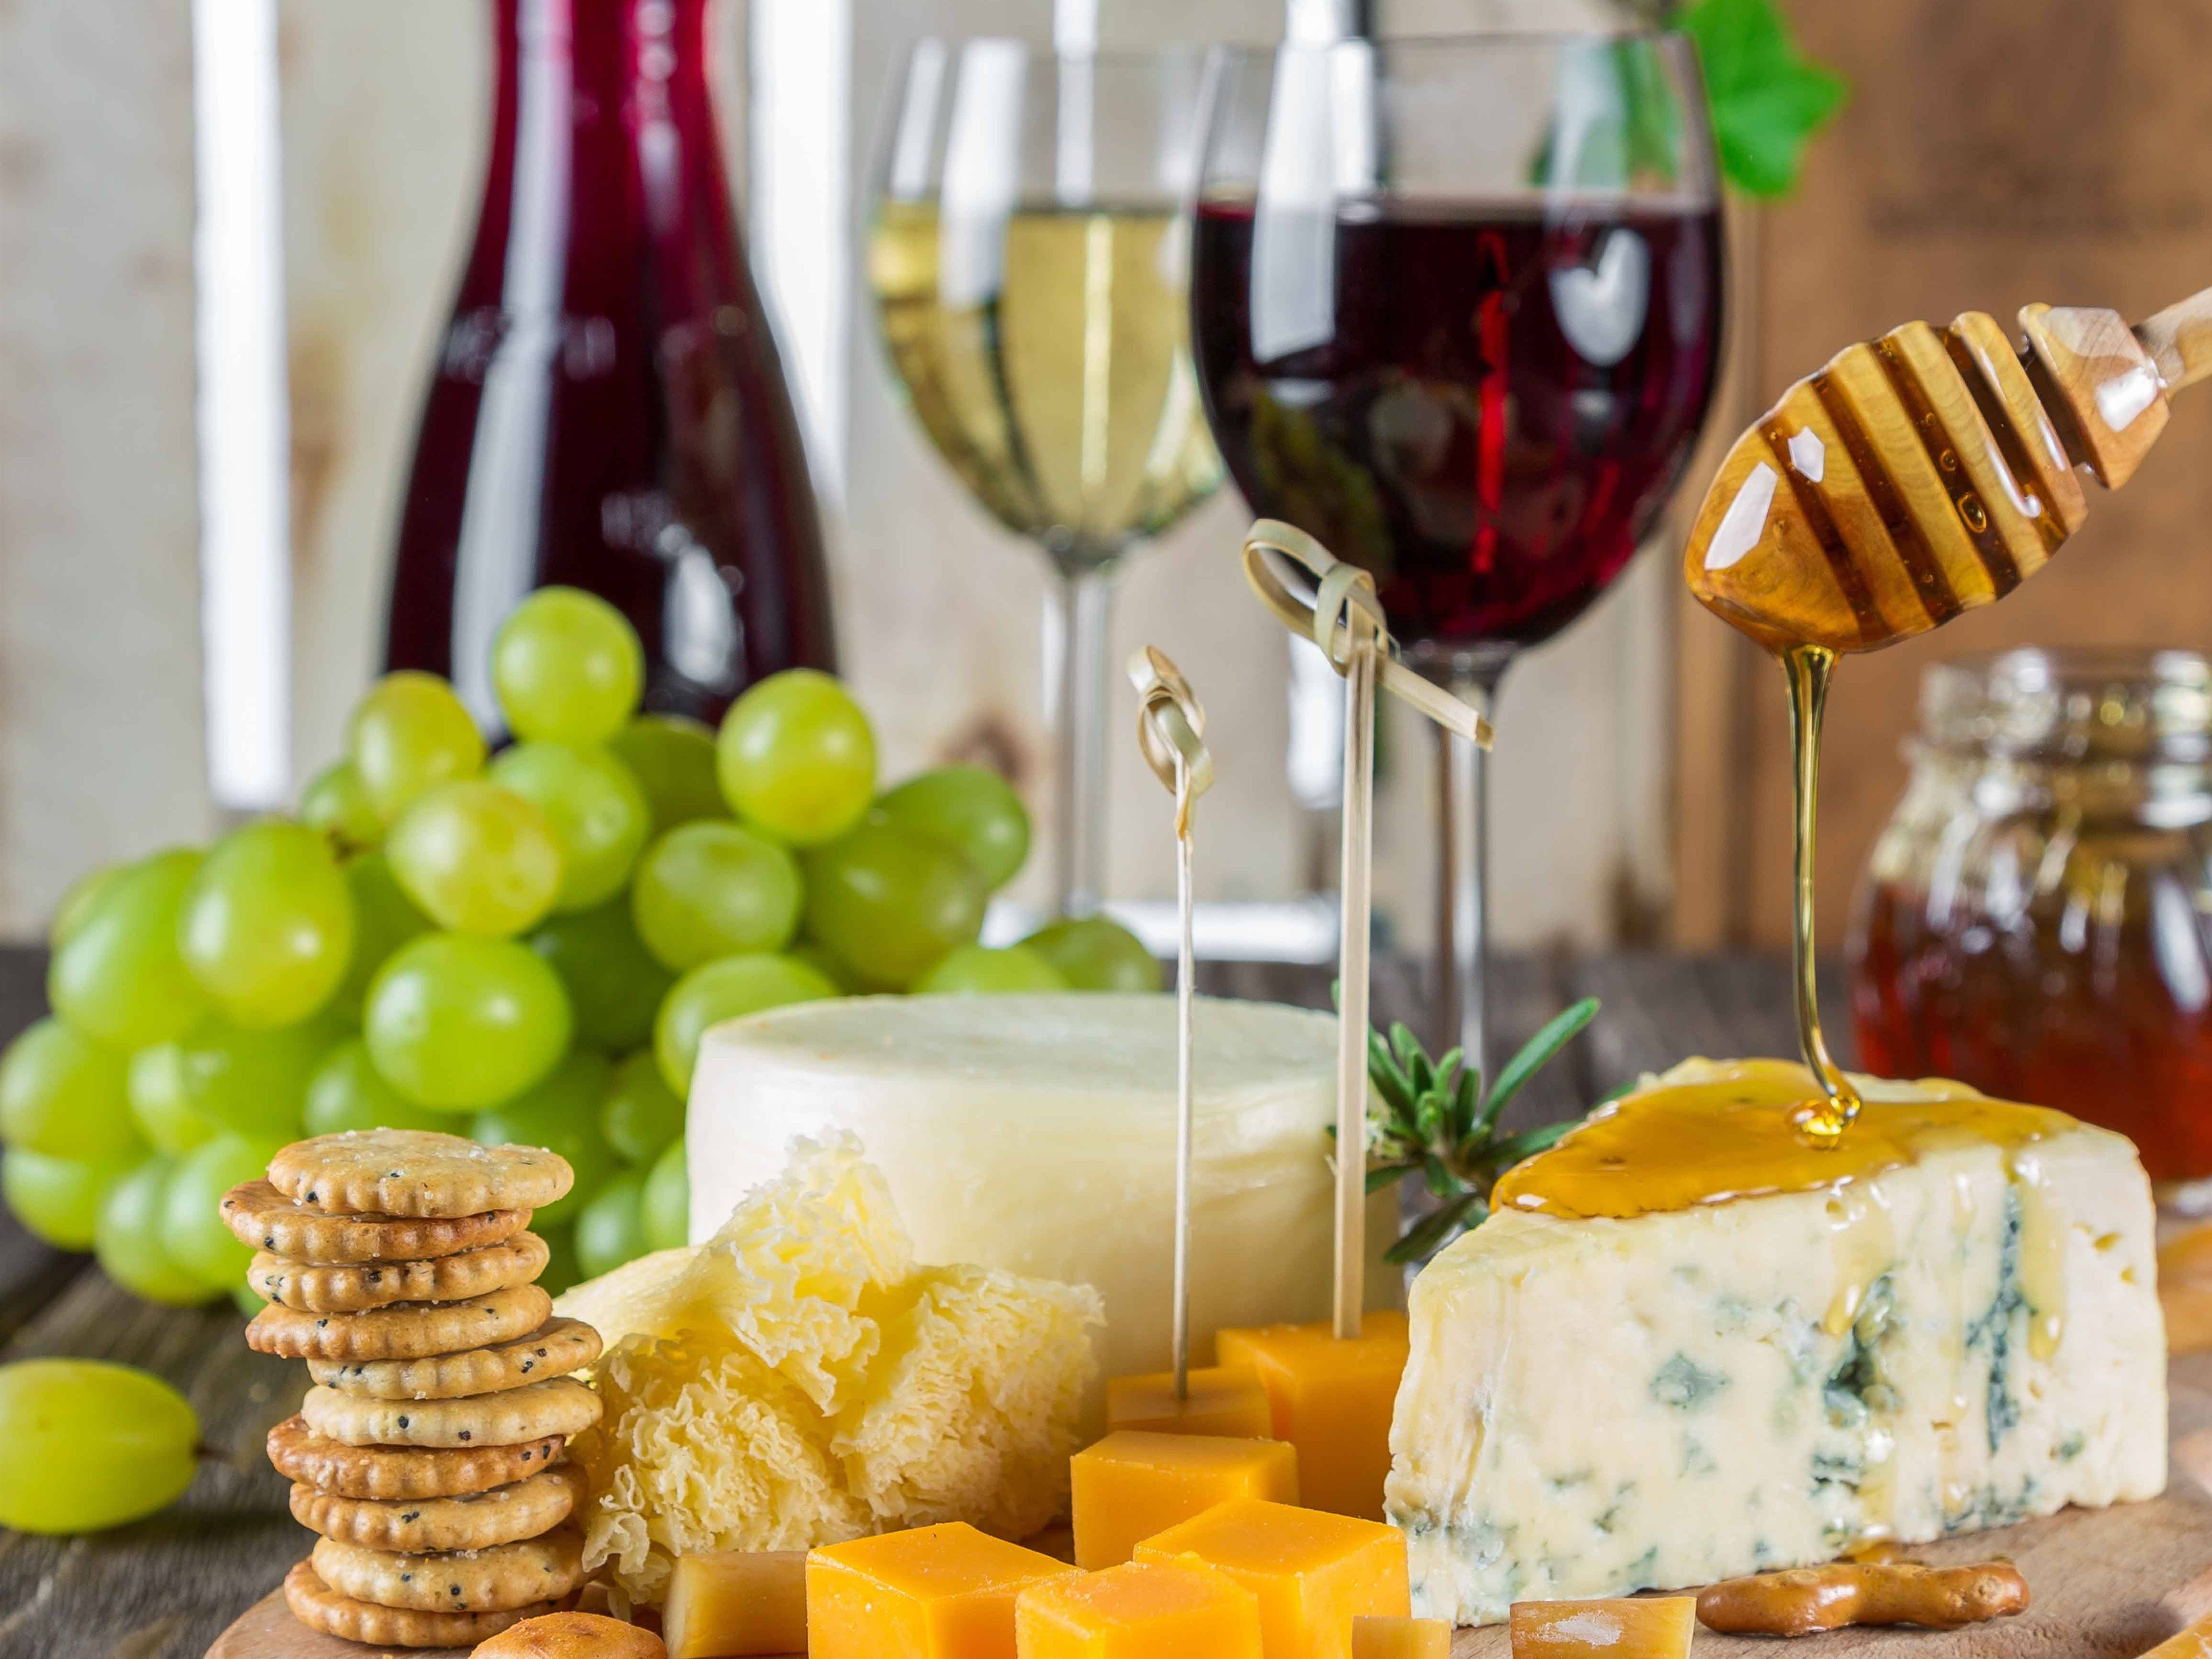 Welcher Wein passt zu welchem Käse?